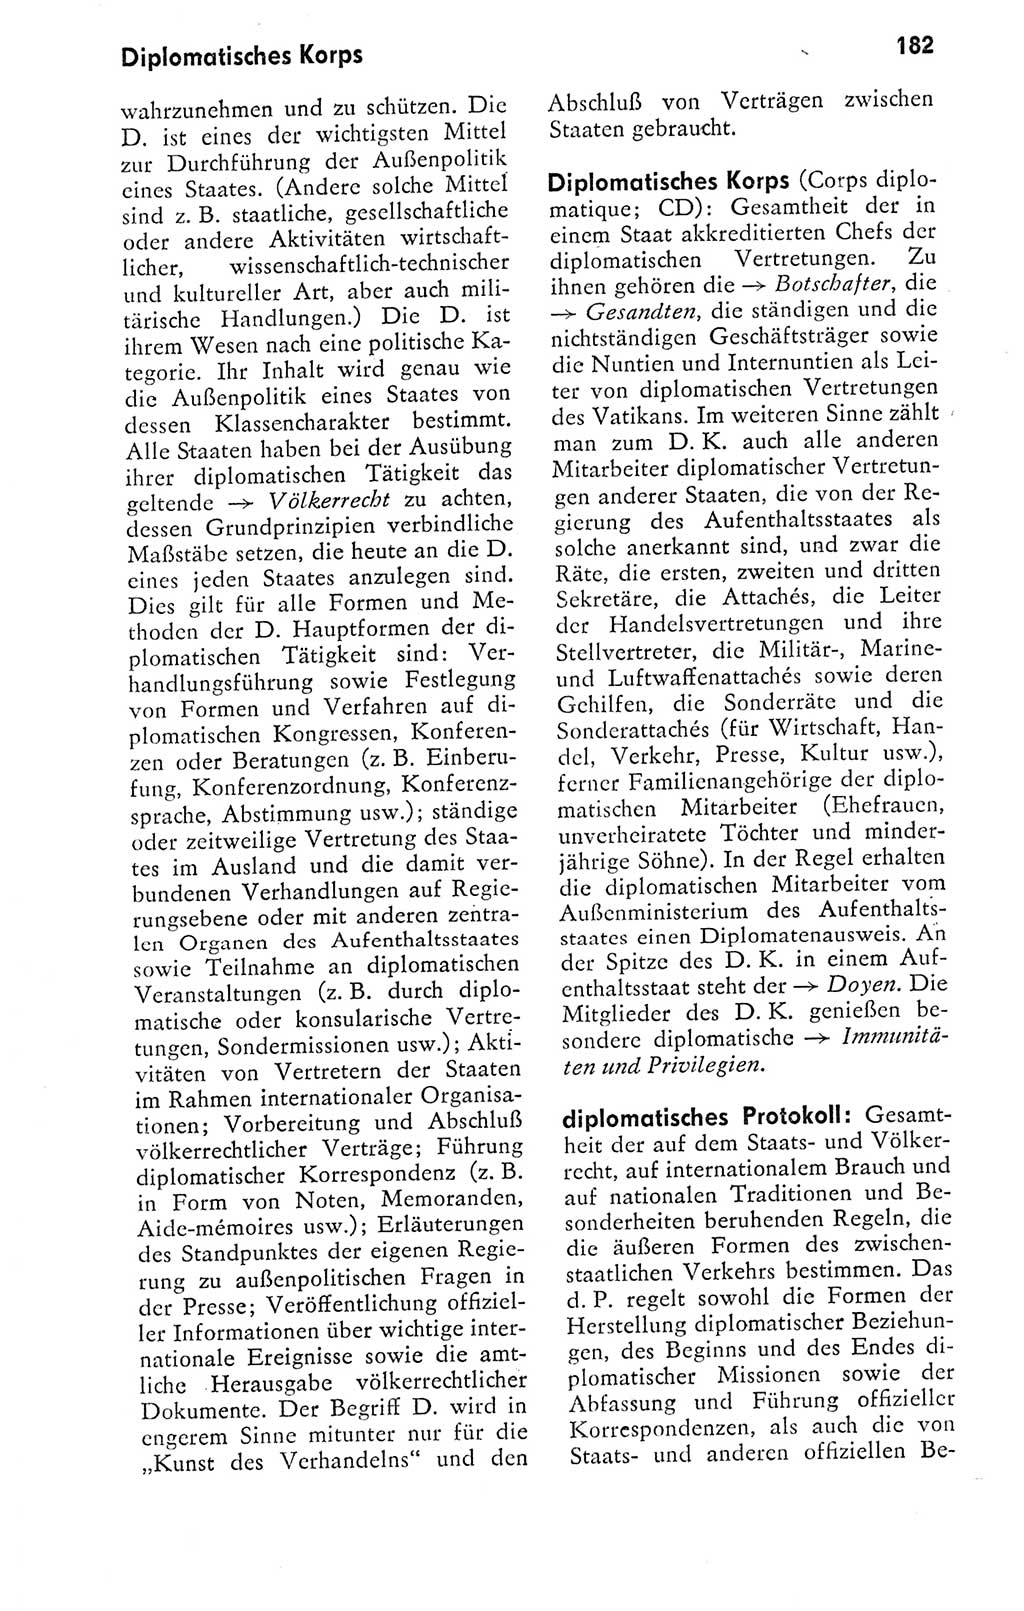 Kleines politisches Wörterbuch [Deutsche Demokratische Republik (DDR)] 1978, Seite 182 (Kl. pol. Wb. DDR 1978, S. 182)